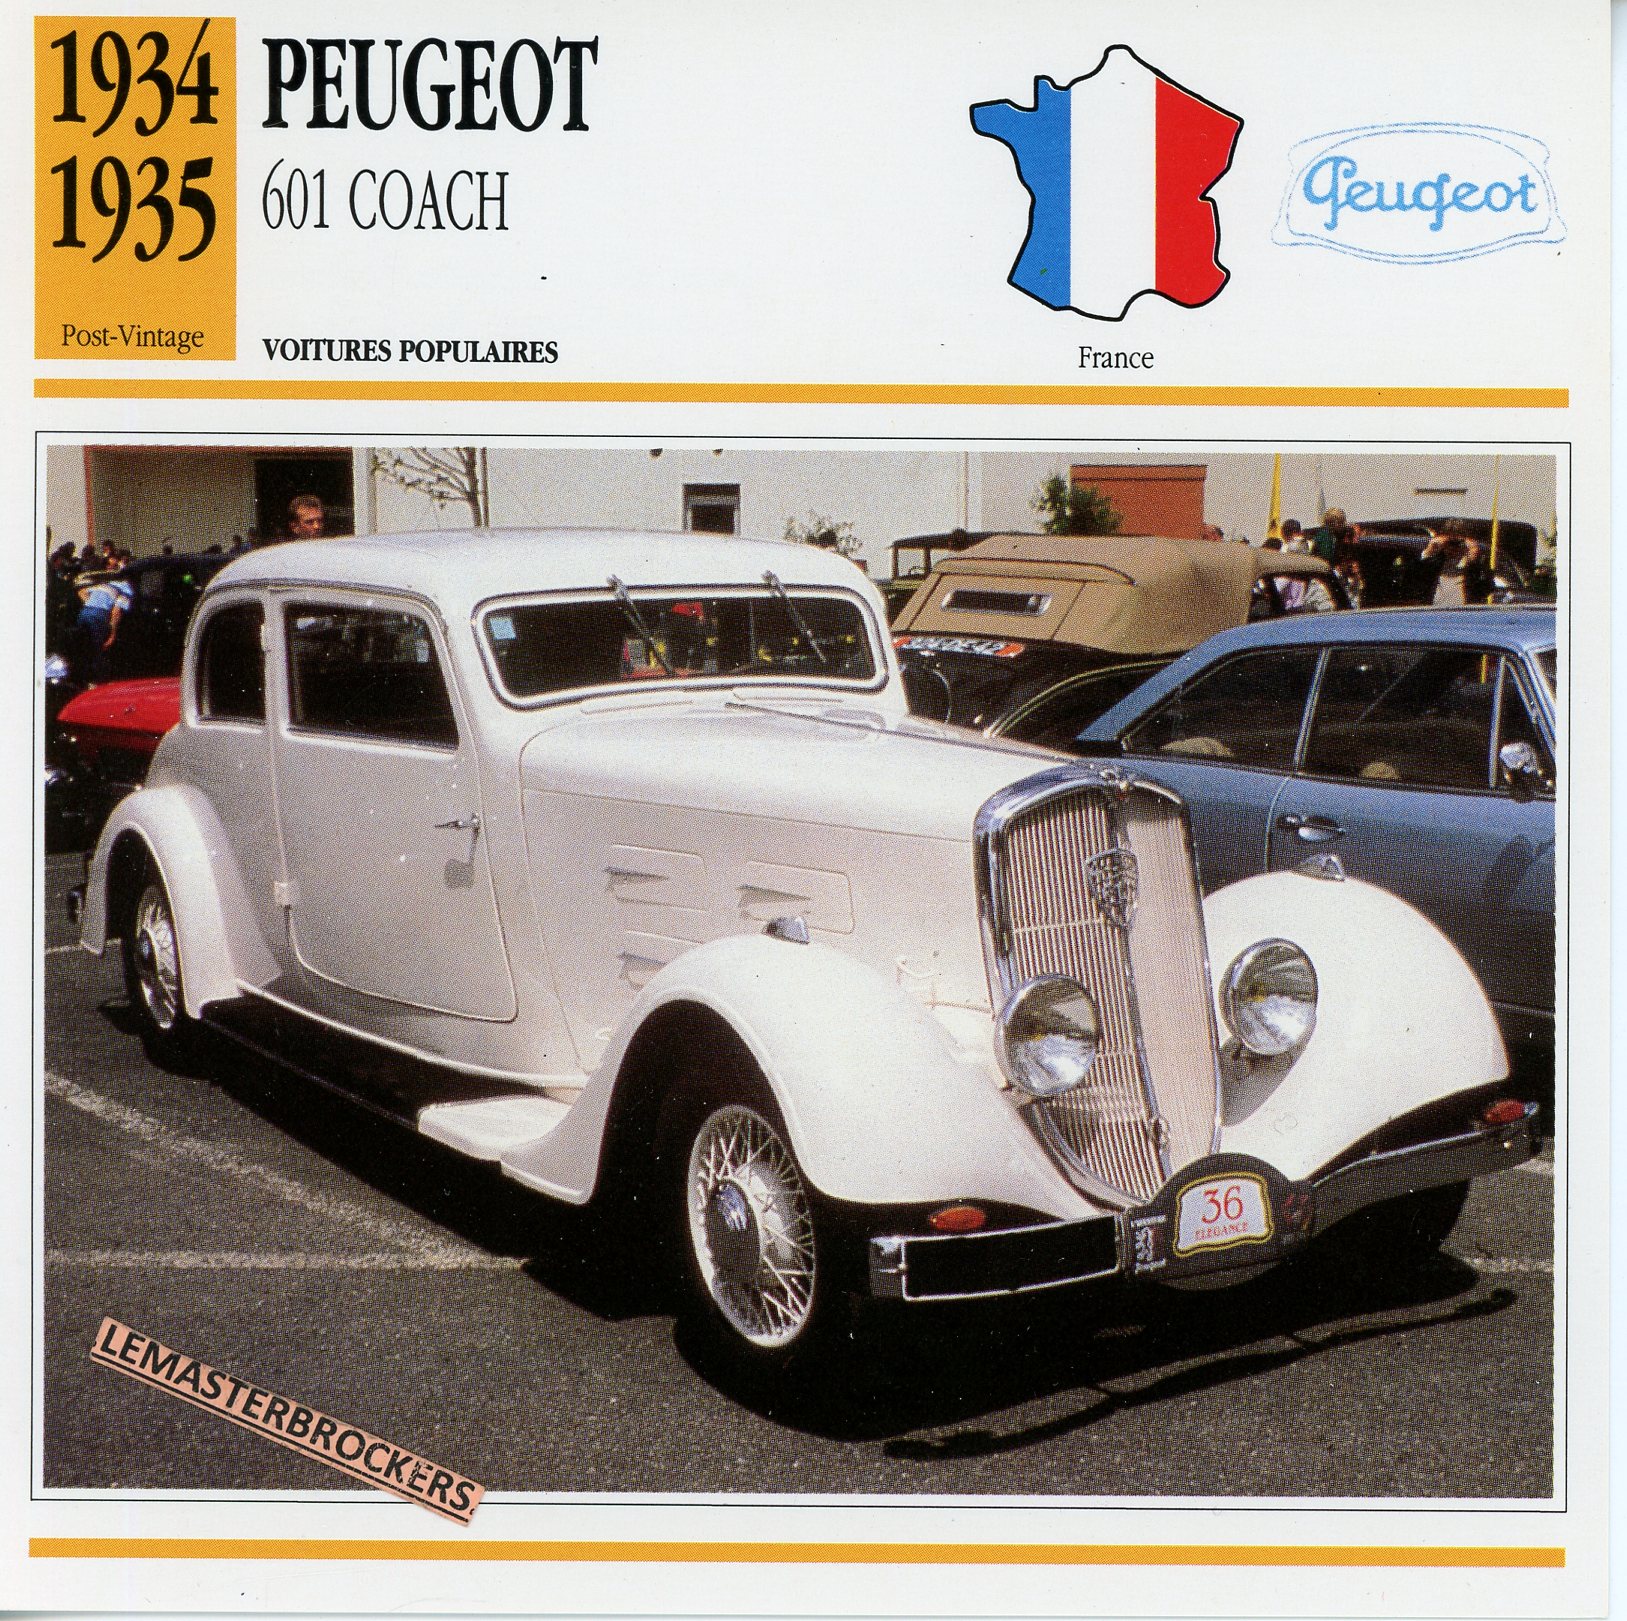 PEUGEOT-601-COACH-1934-1935-FICHE-AUTO-ATLAS-LEMASTERBROCKERS